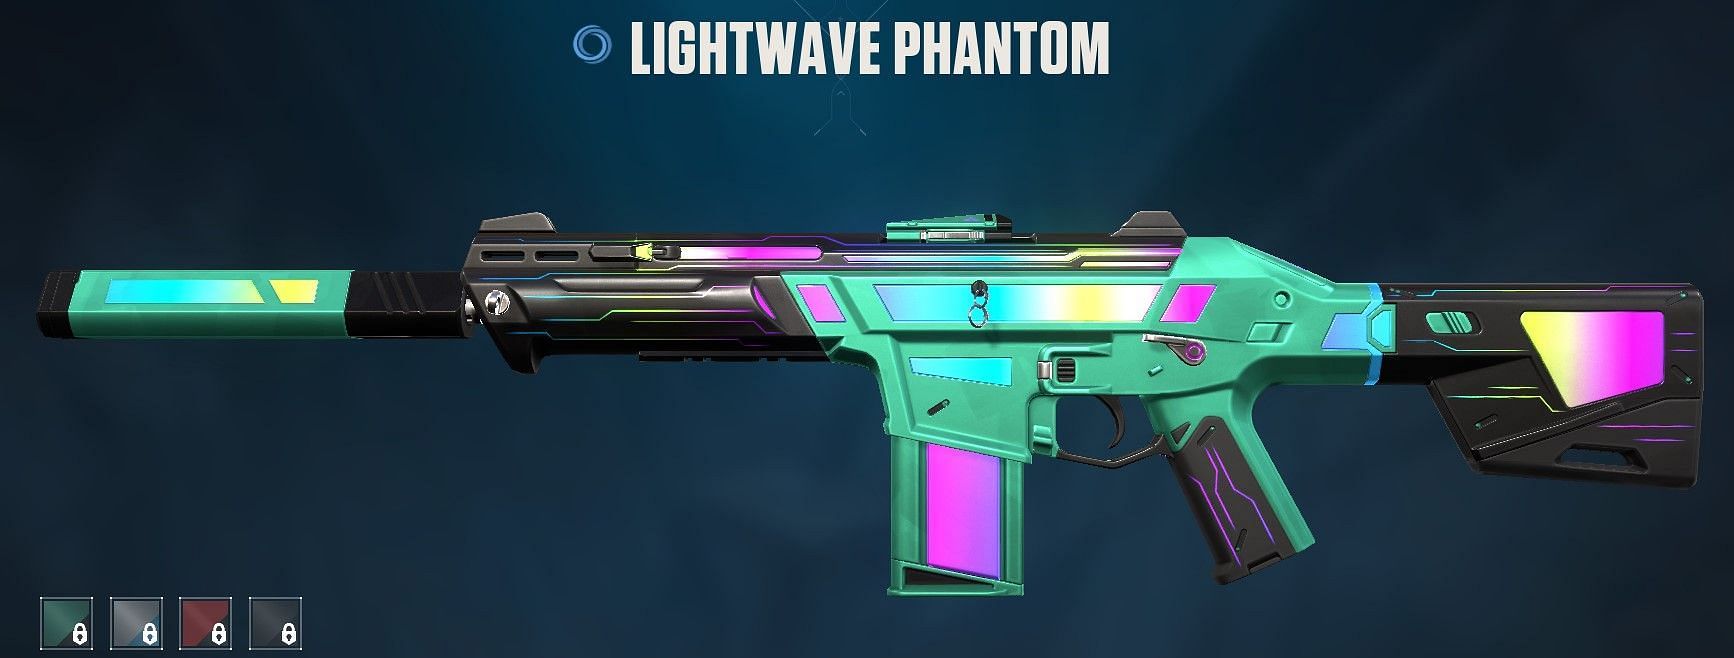 Lightwave Phantom (Image via Riot Games)